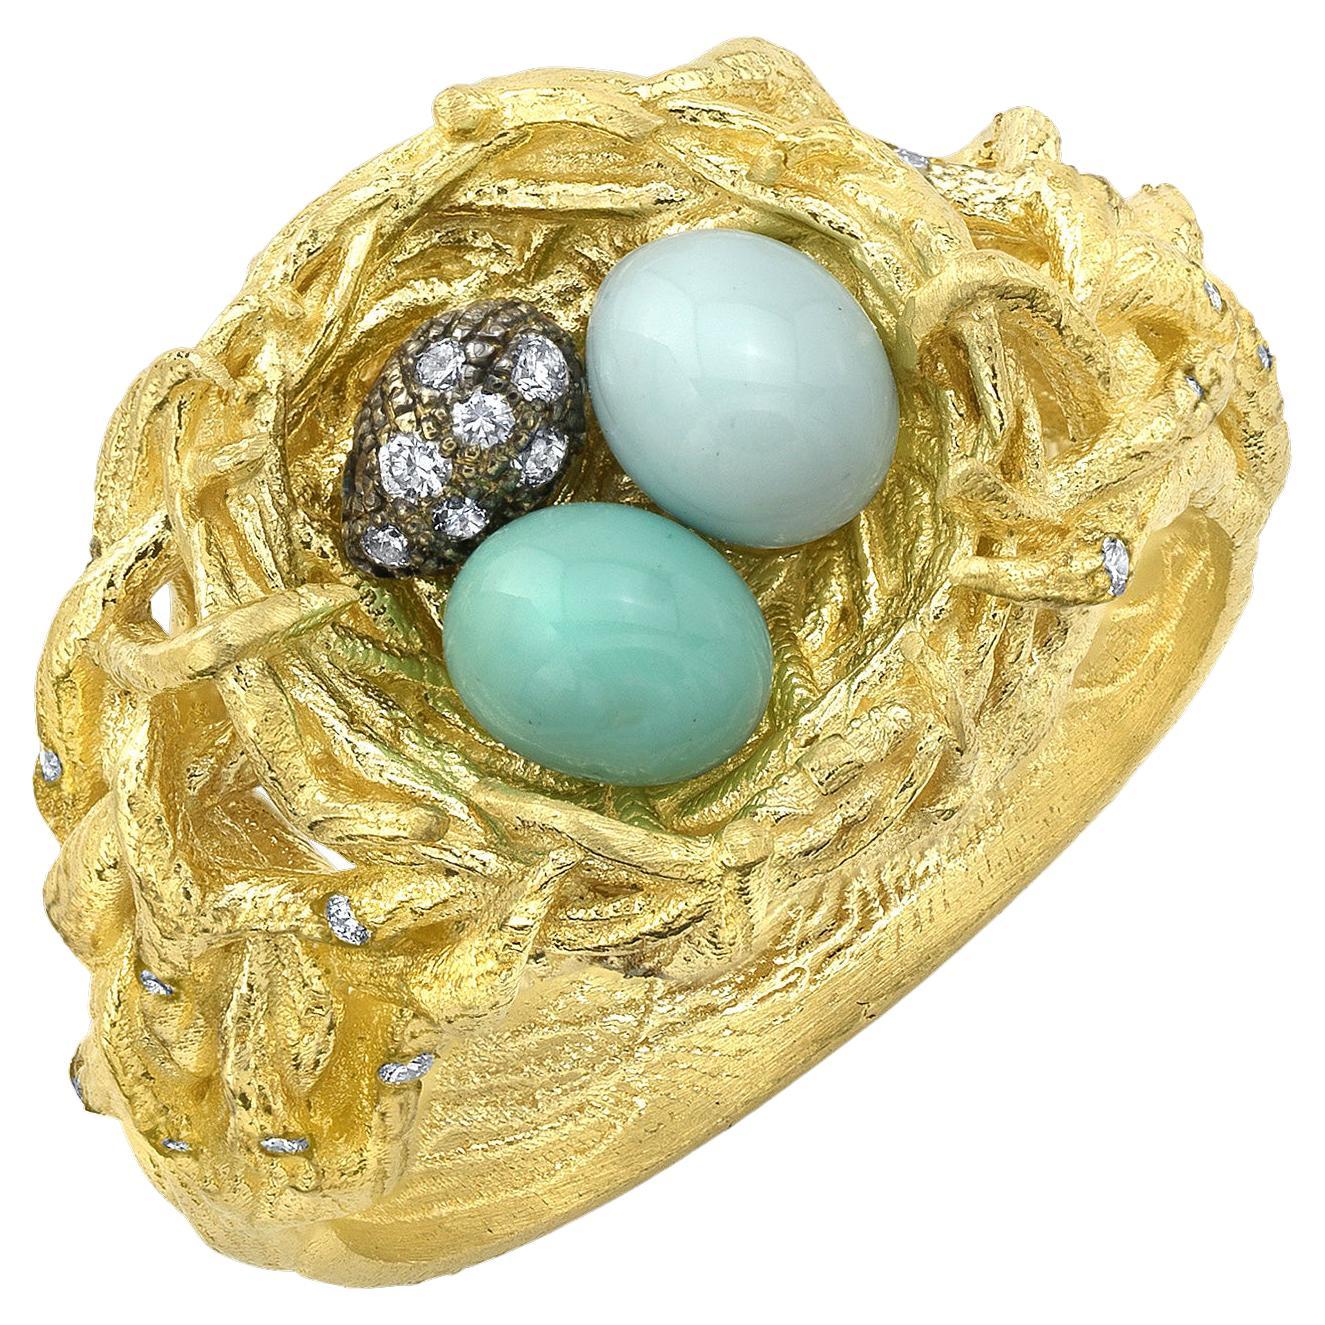 Birds Nest Ring - 6 For Sale on 1stDibs | bird nest ring, egg 